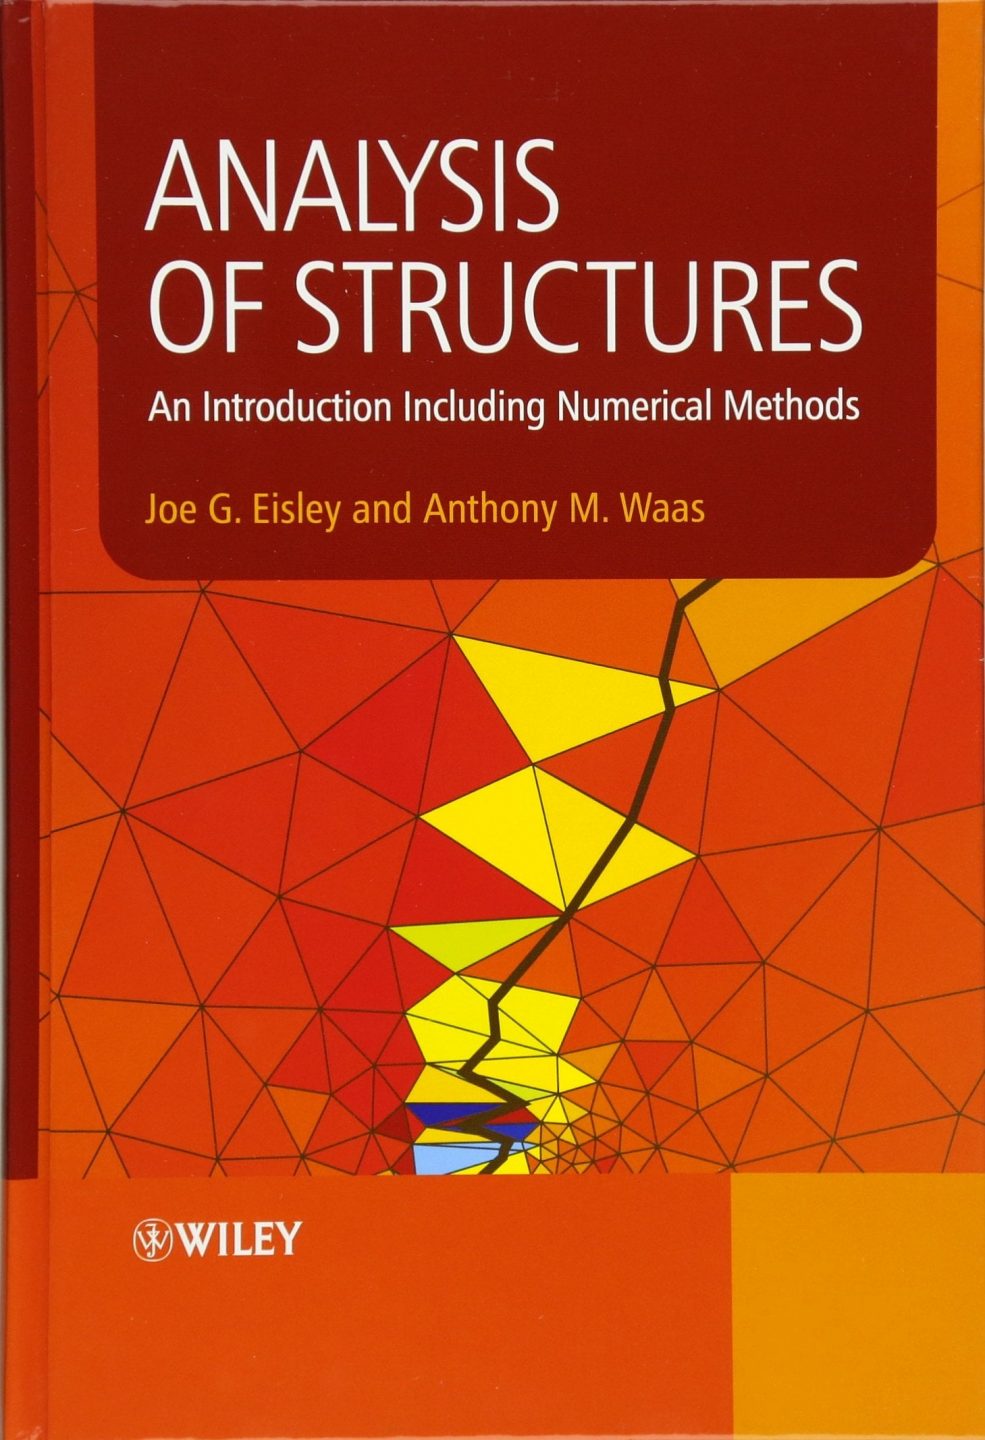 Analysis of Structures 1 Edición Joe G. Eisley PDF